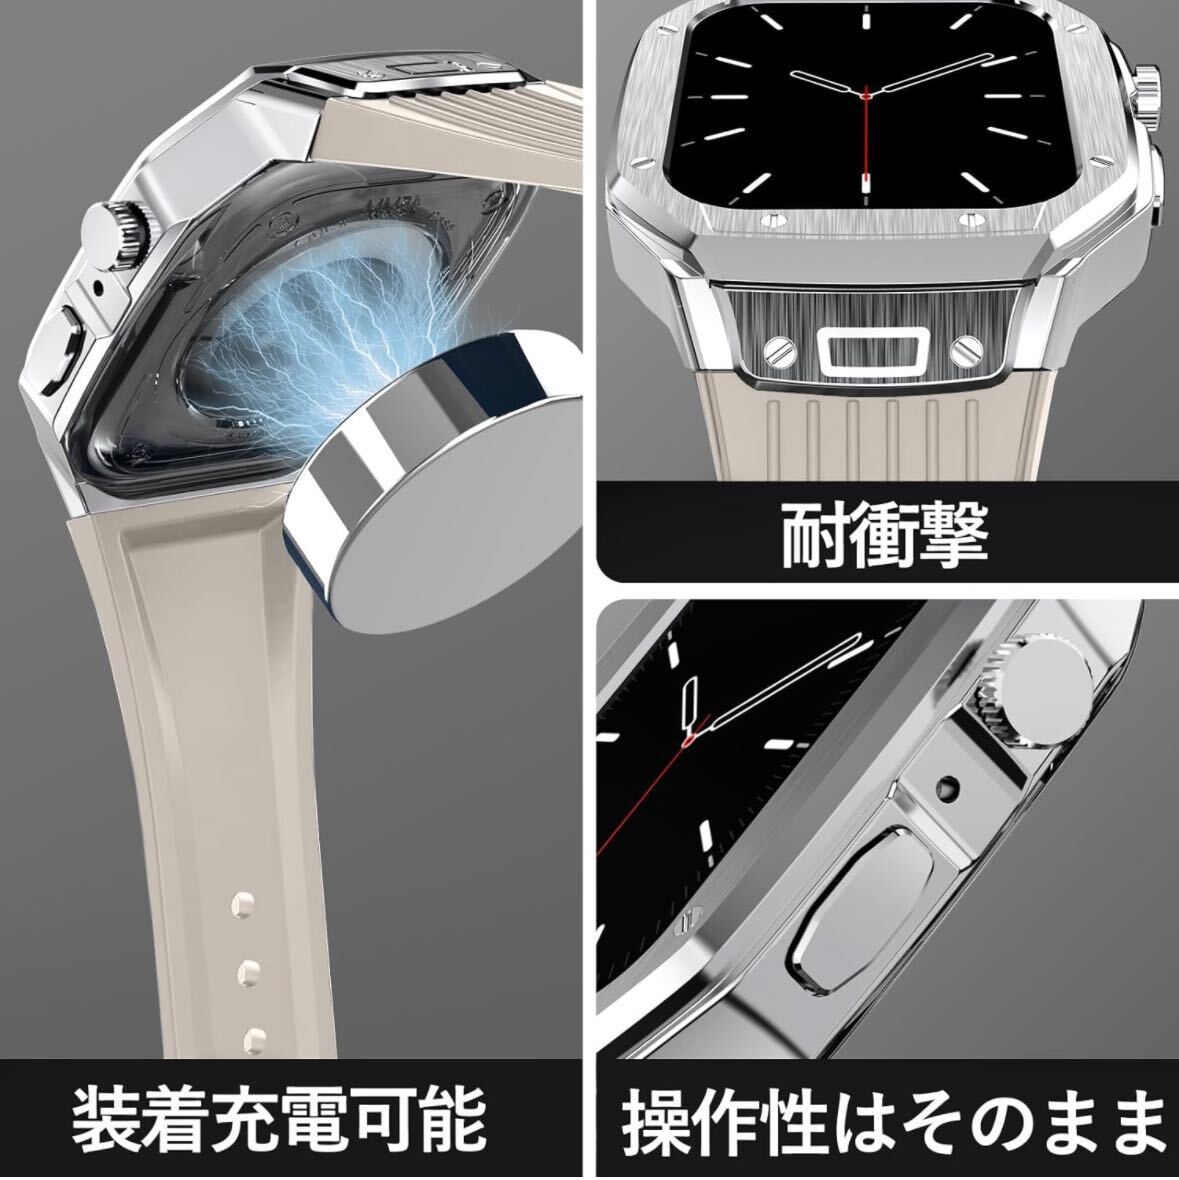 ③ Apple Watch 3in1 в одном корпусе дизайн частота с чехлом apple watch аксессуары 45mm/44mm, серебряный кейс . Star свет ремень )